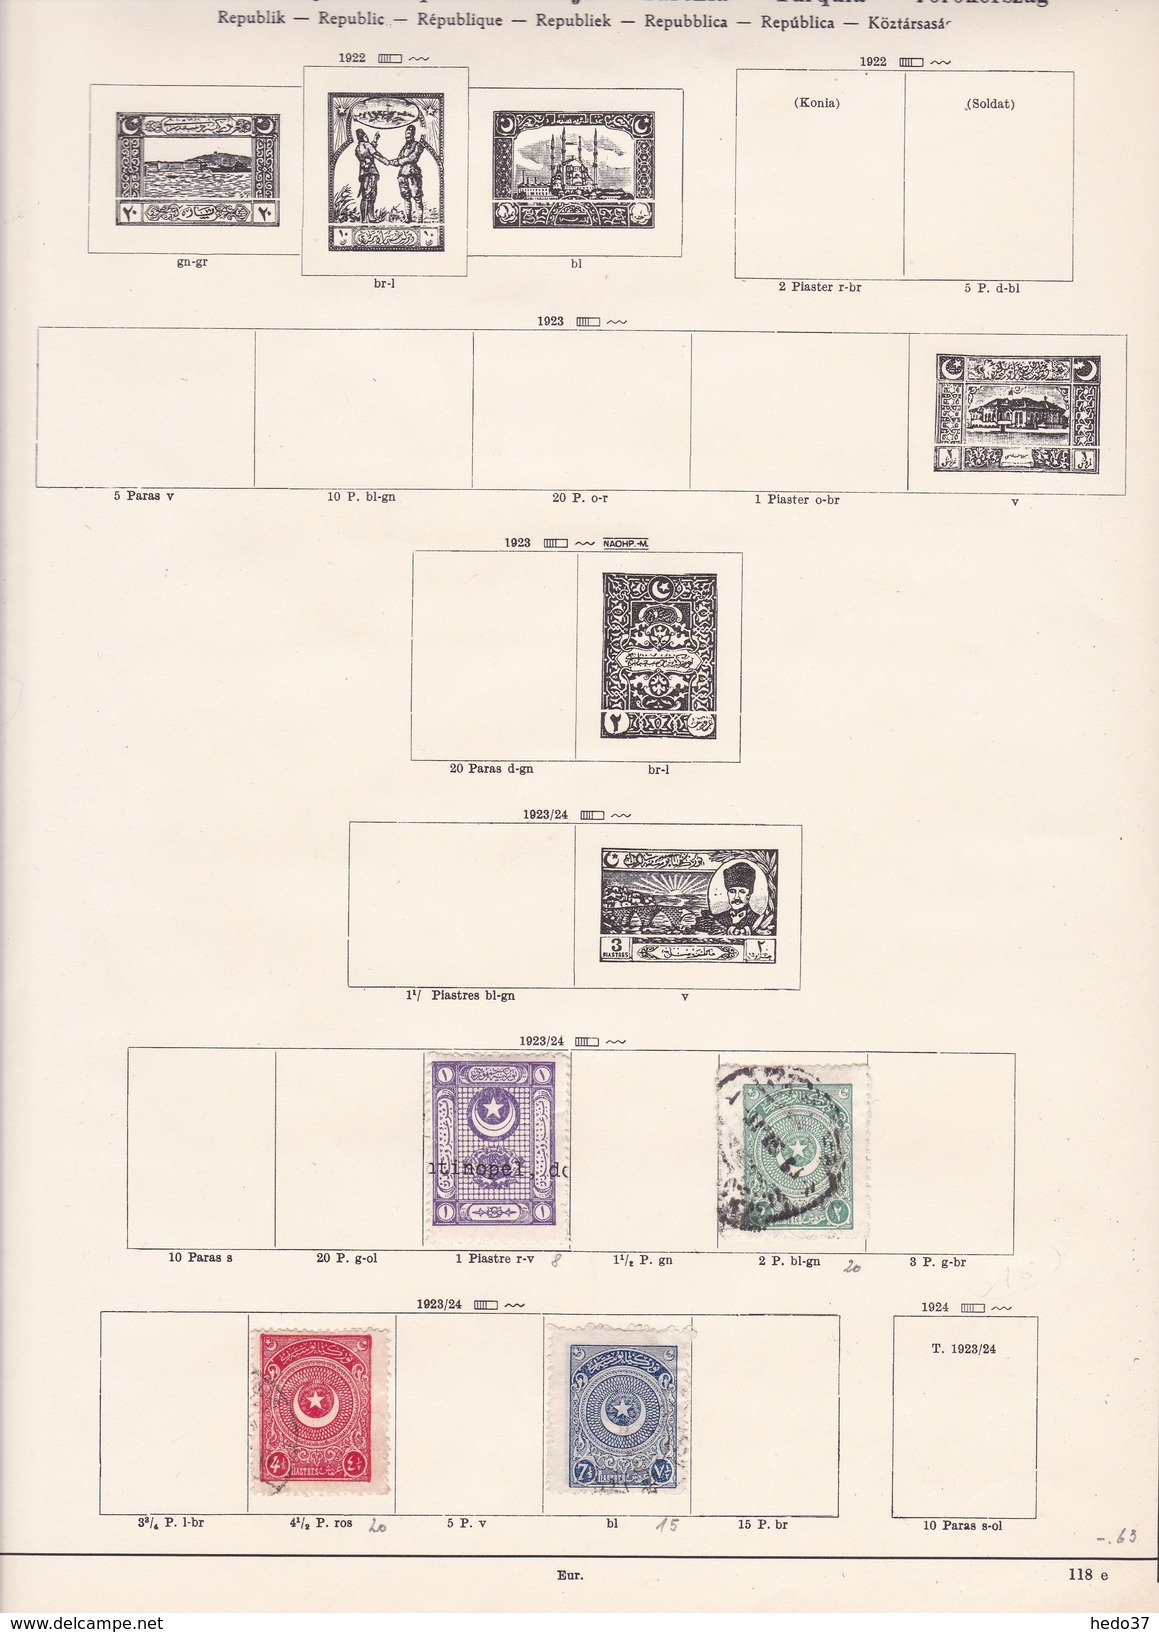 Turquie - Collection Vendue Page Par Page - Timbres Oblitérés / Neufs *(avec Charnière) -Qualité B/TB - Used Stamps